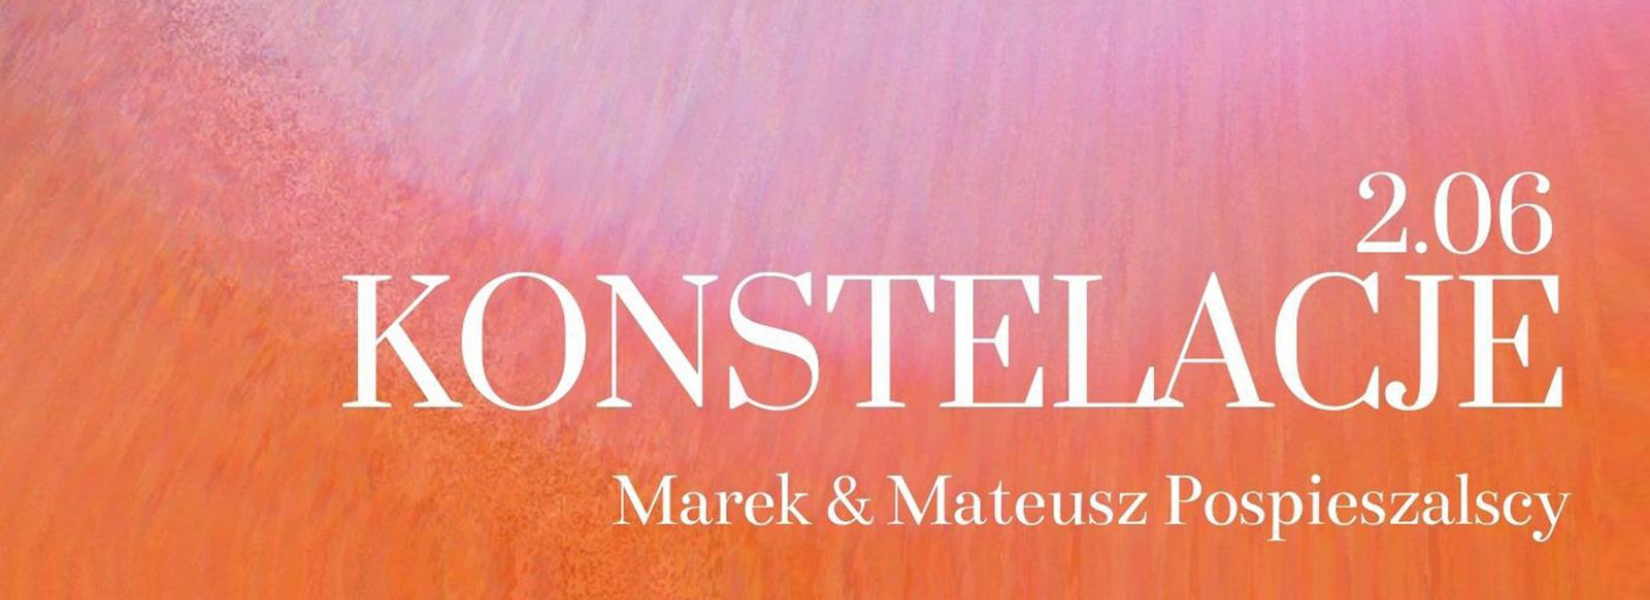 Mateusz i Marek Pospieszalscy | Konstelacje